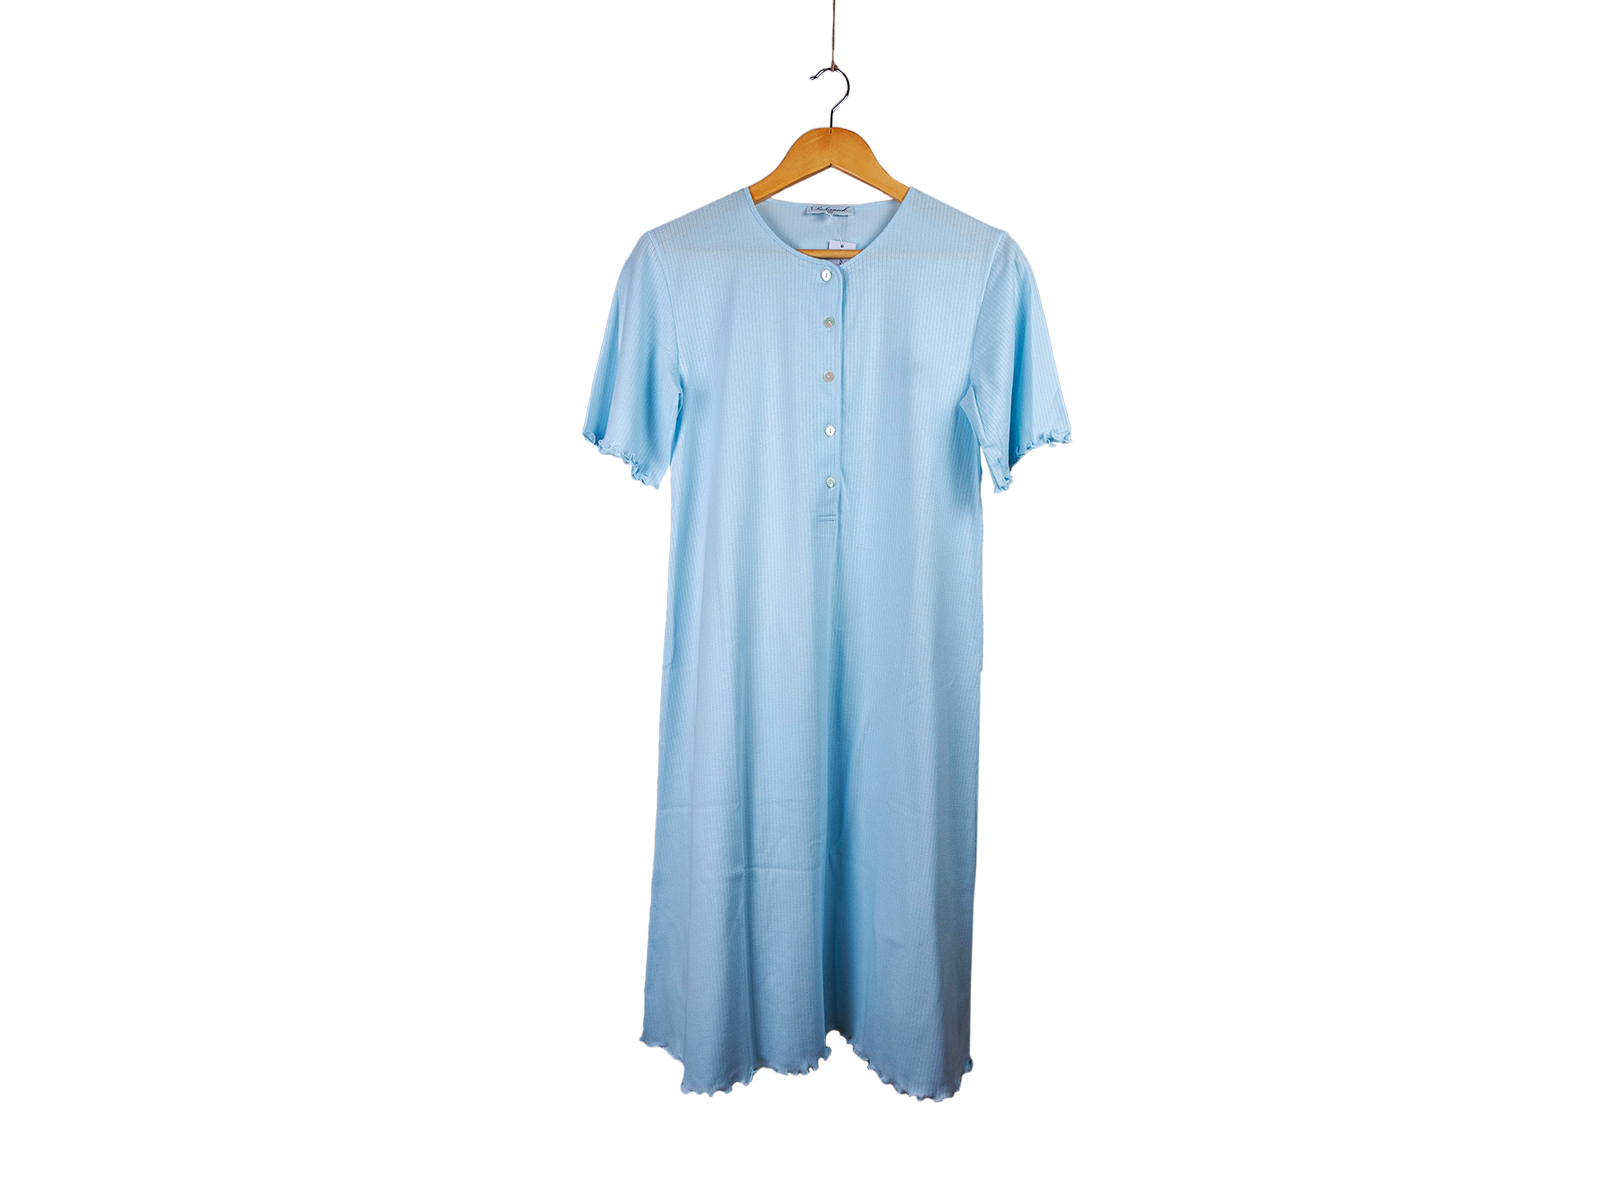 Siebaneck, i pigiami artigianali italiani: - donna - mod.7 DONNA azzurro